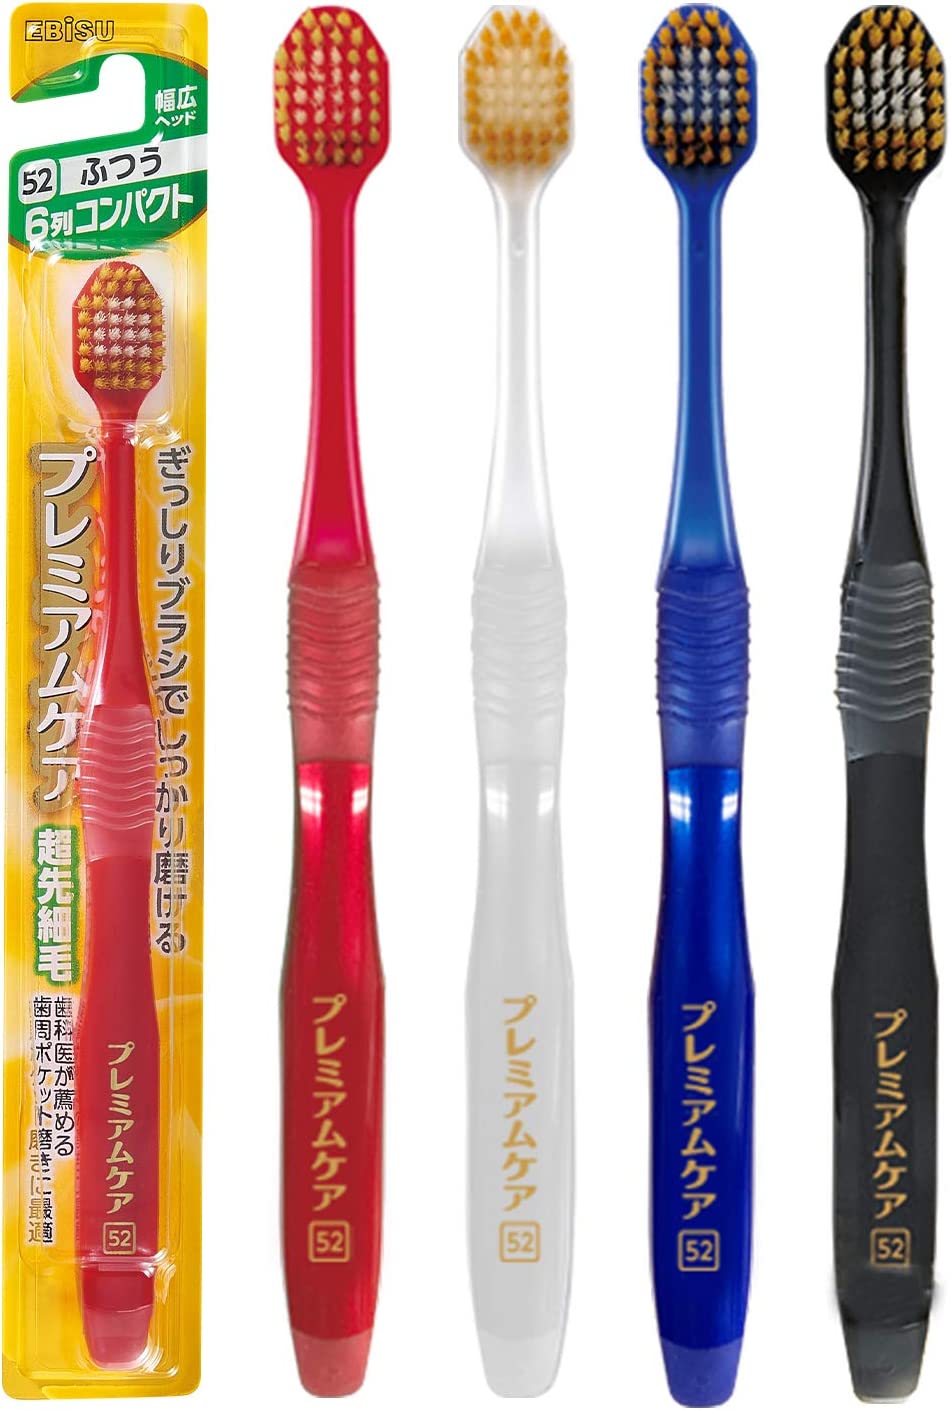 🇯🇵日本 EBISU 惠百施(52) 💕倍護普通 牙刷 4色隨機發貨